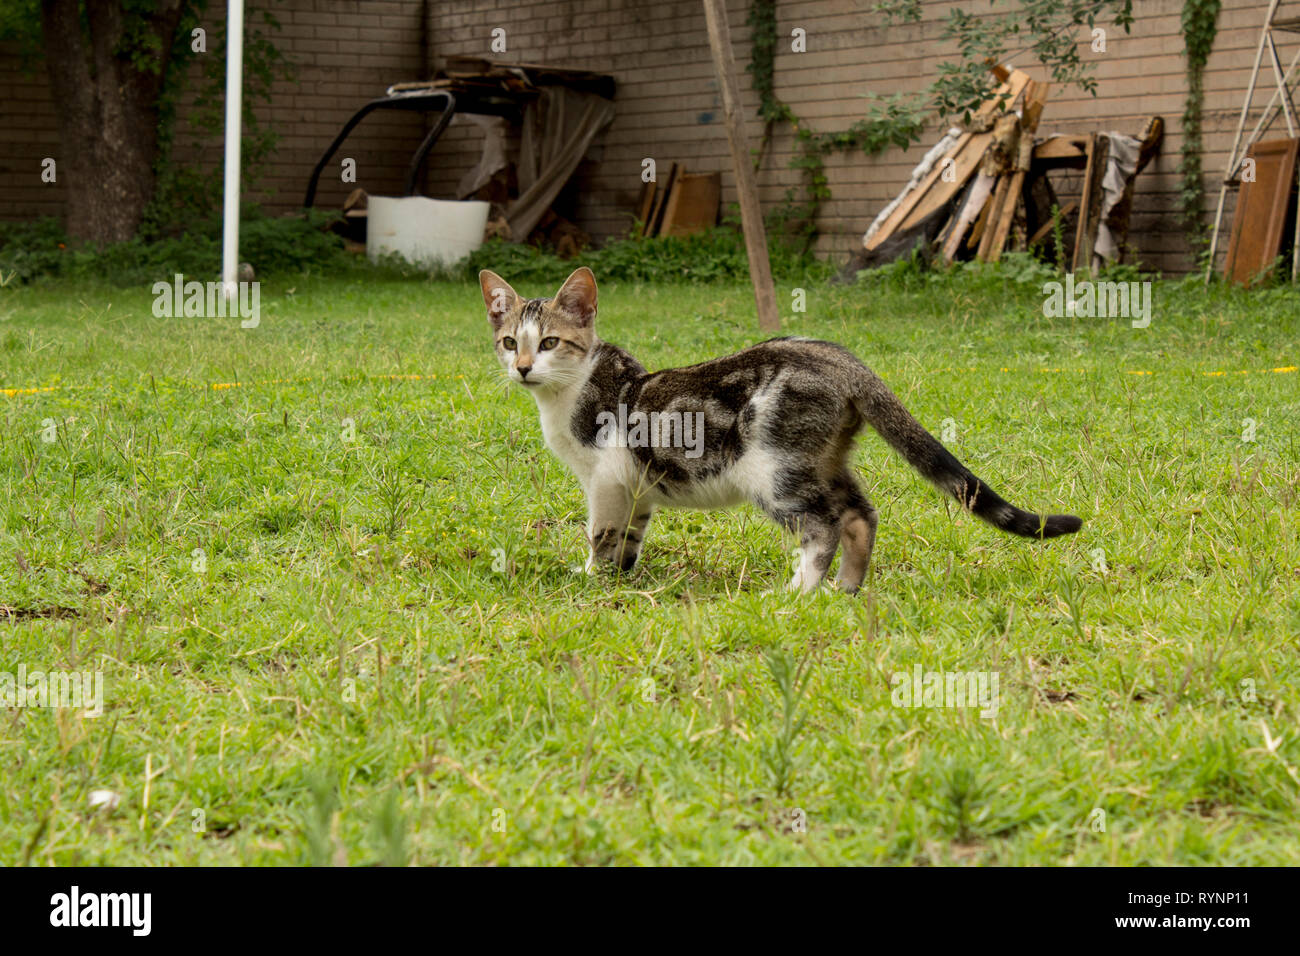 Wirklich süße kleine Kätzchen im Hinterhof. Lindo Gatito jugando en el patio trasero. Stockfoto